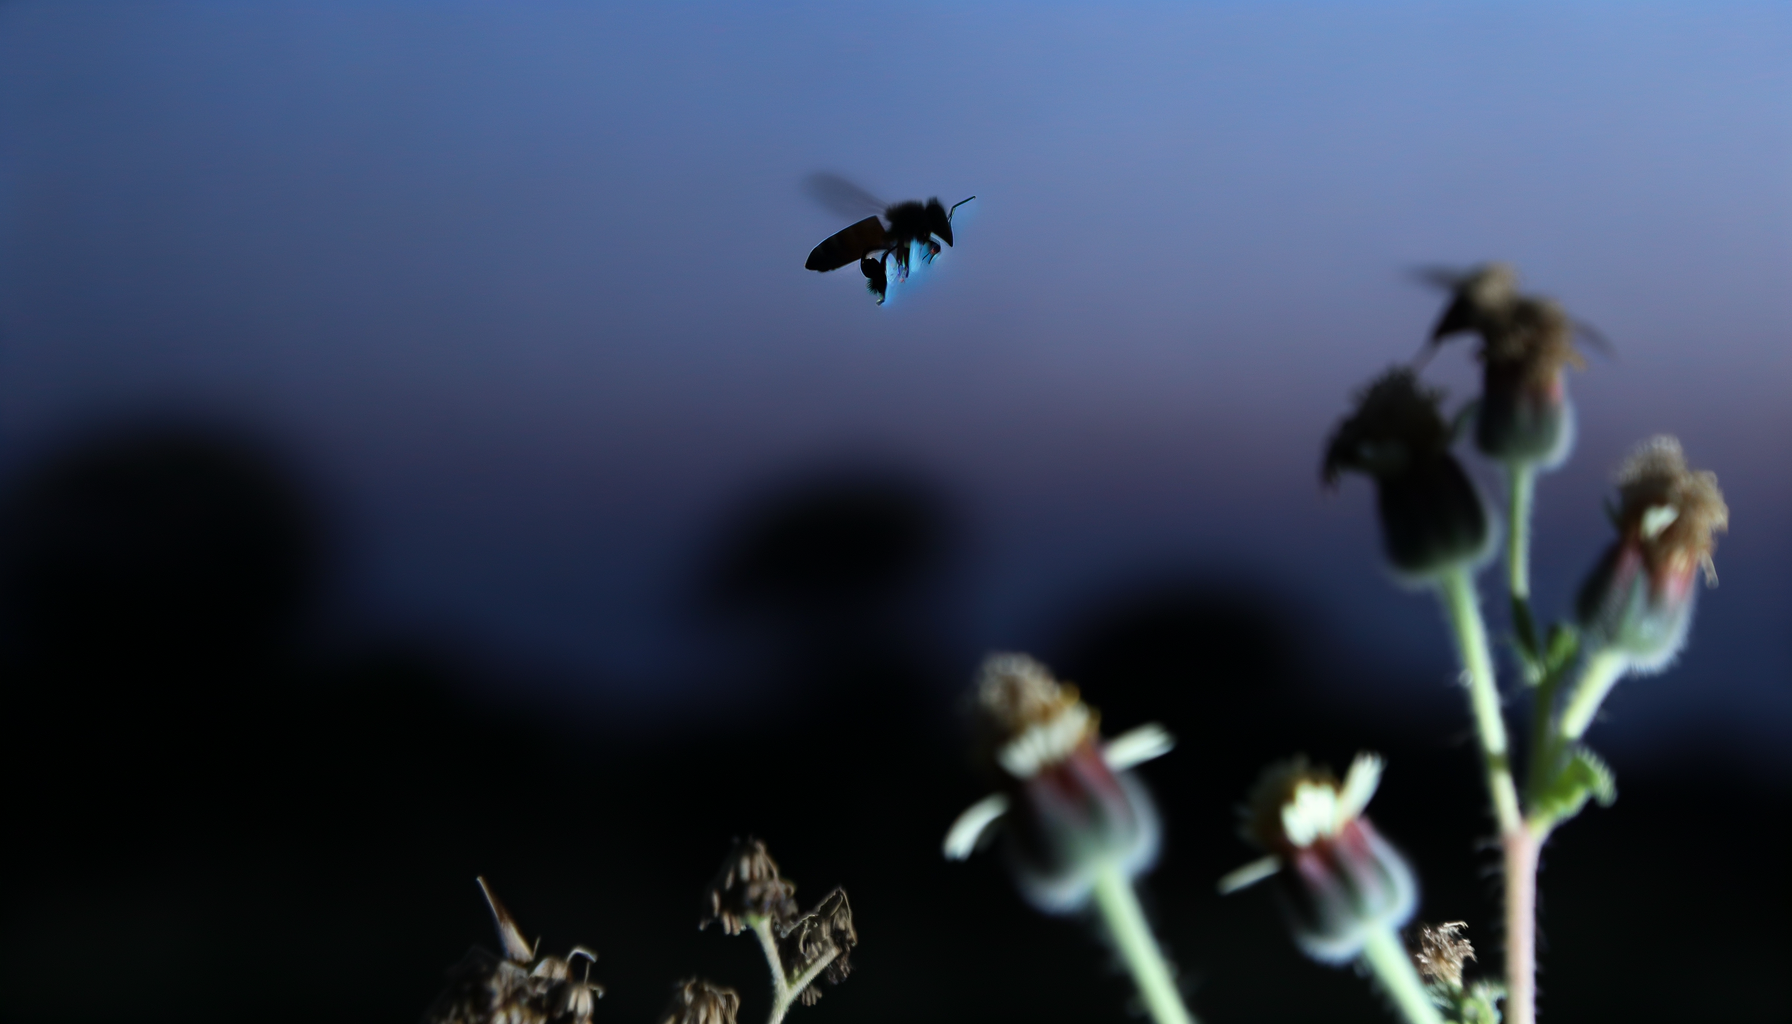 Fliegen Bienen im Dunkeln? Entdecke die nächtlichen Geheimnisse unseres summenden Freundes!